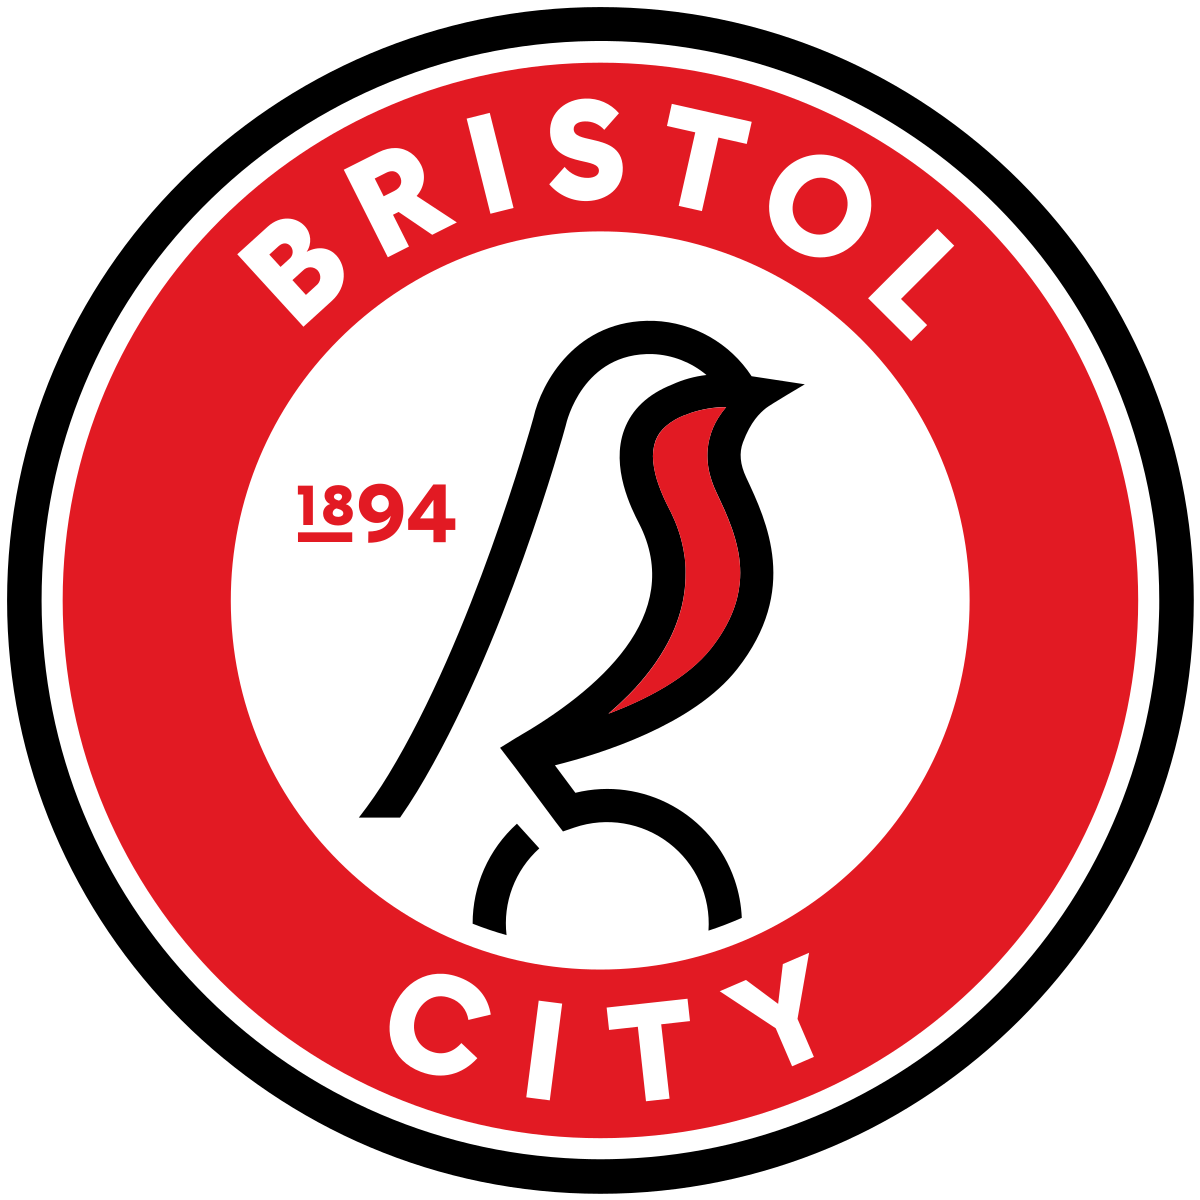 Bristol City v Watford - Hospitality